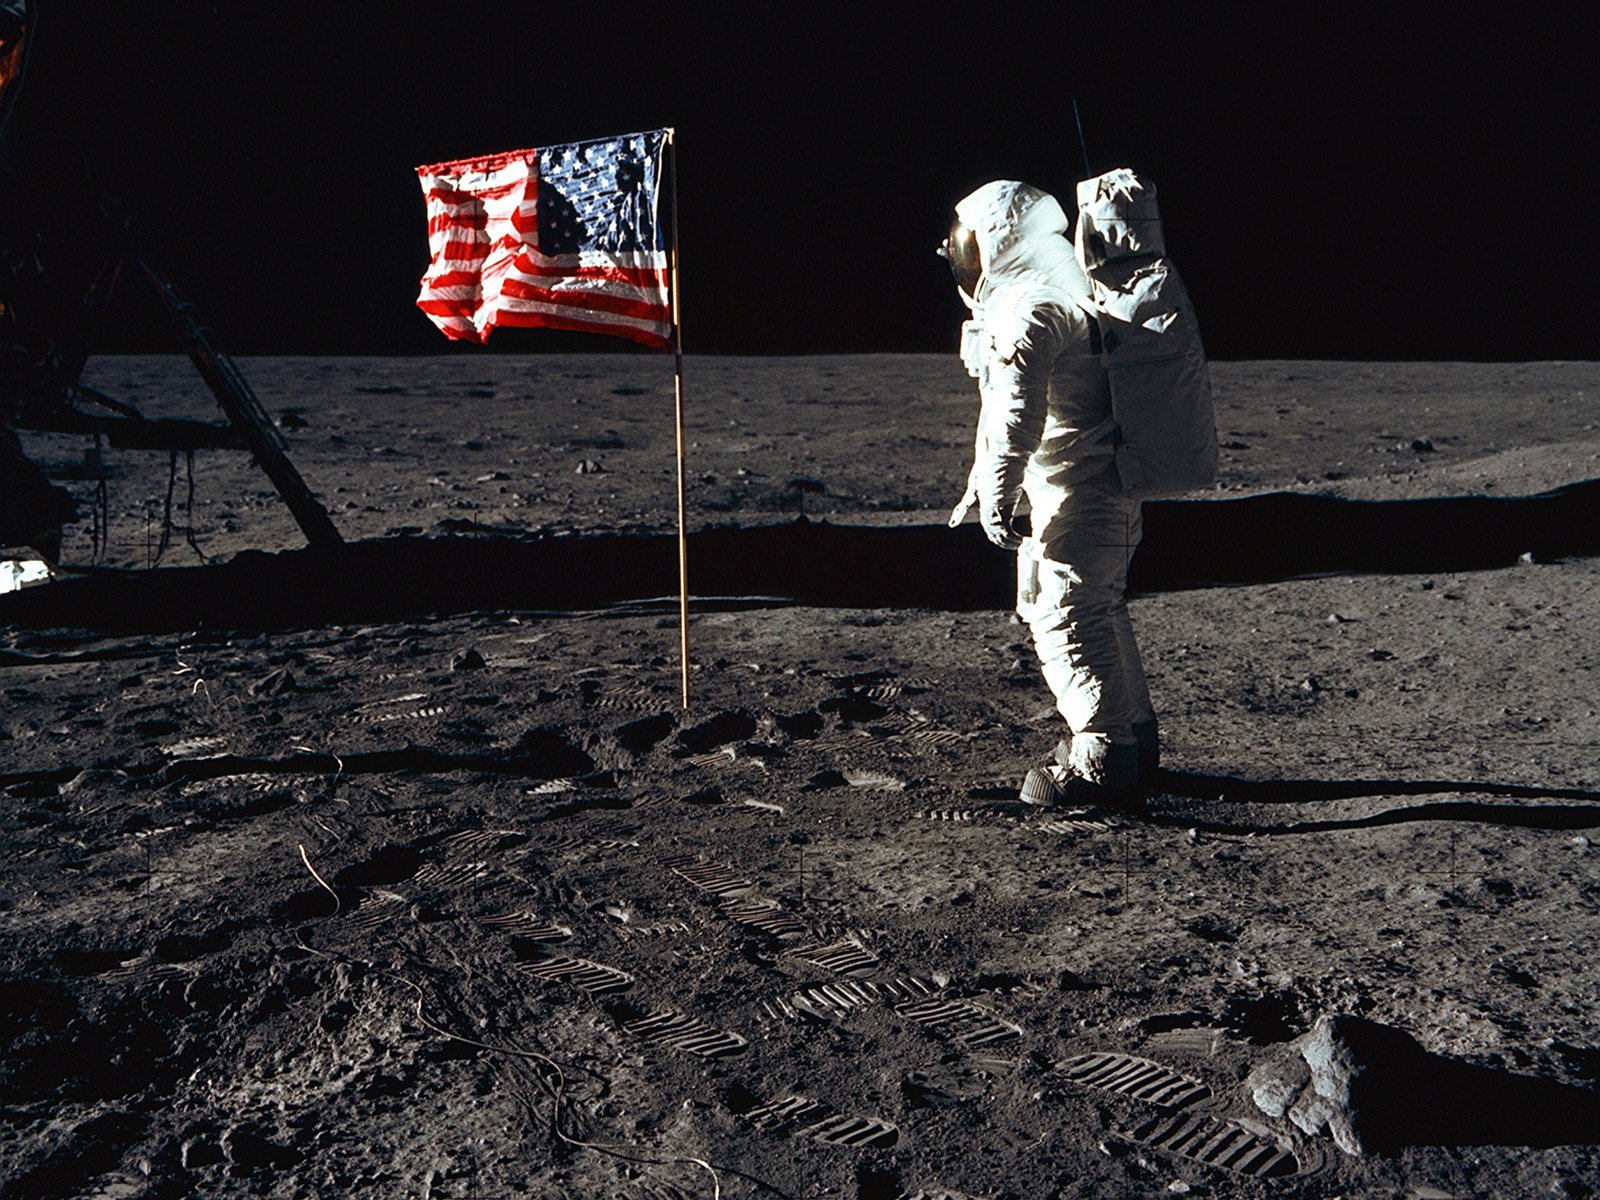 壁纸1600x1200One Giant Leap for Mankind  Buzz Aldrin and the U S flag on the Moon 巴兹 奥尔德林和国旗壁纸 阿波罗11号登月40周年纪念壁纸壁纸 阿波罗11号登月40周年纪念壁纸图片 阿波罗11号登月40周年纪念壁纸素材 人文壁纸 人文图库 人文图片素材桌面壁纸